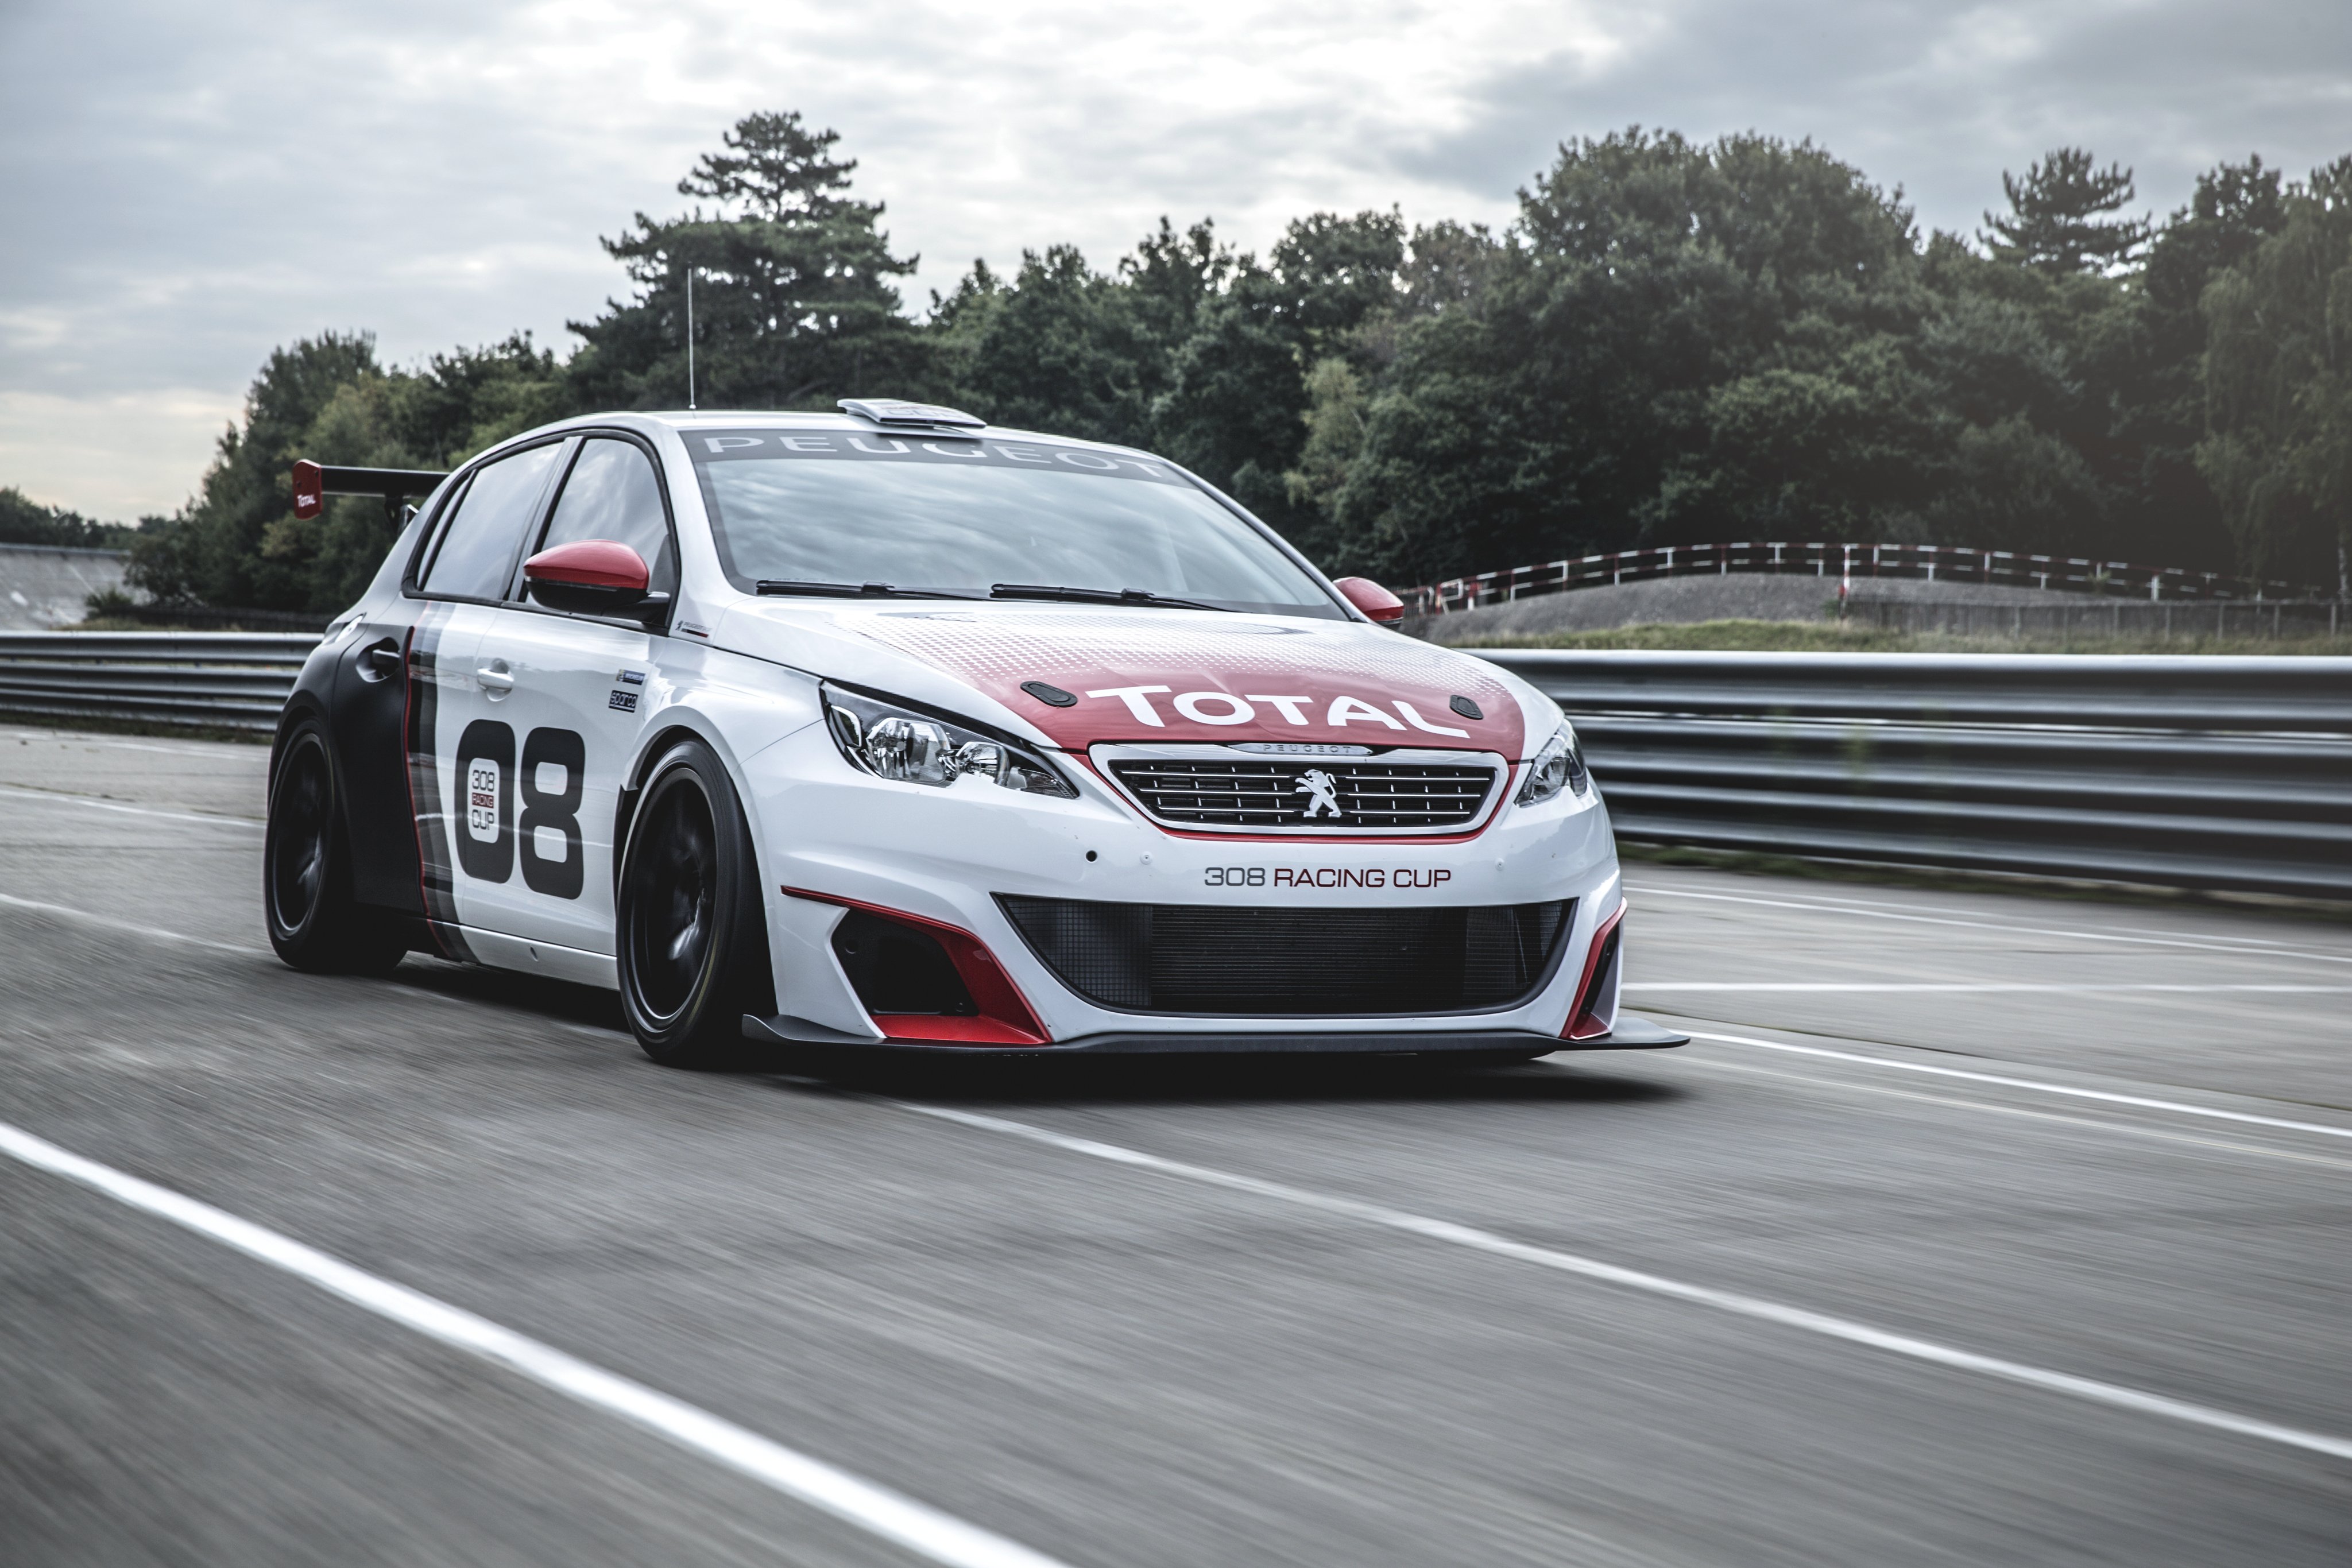 2016, Peugeot, 308, Racing, Cup, T 9, Race, Racing Wallpaper